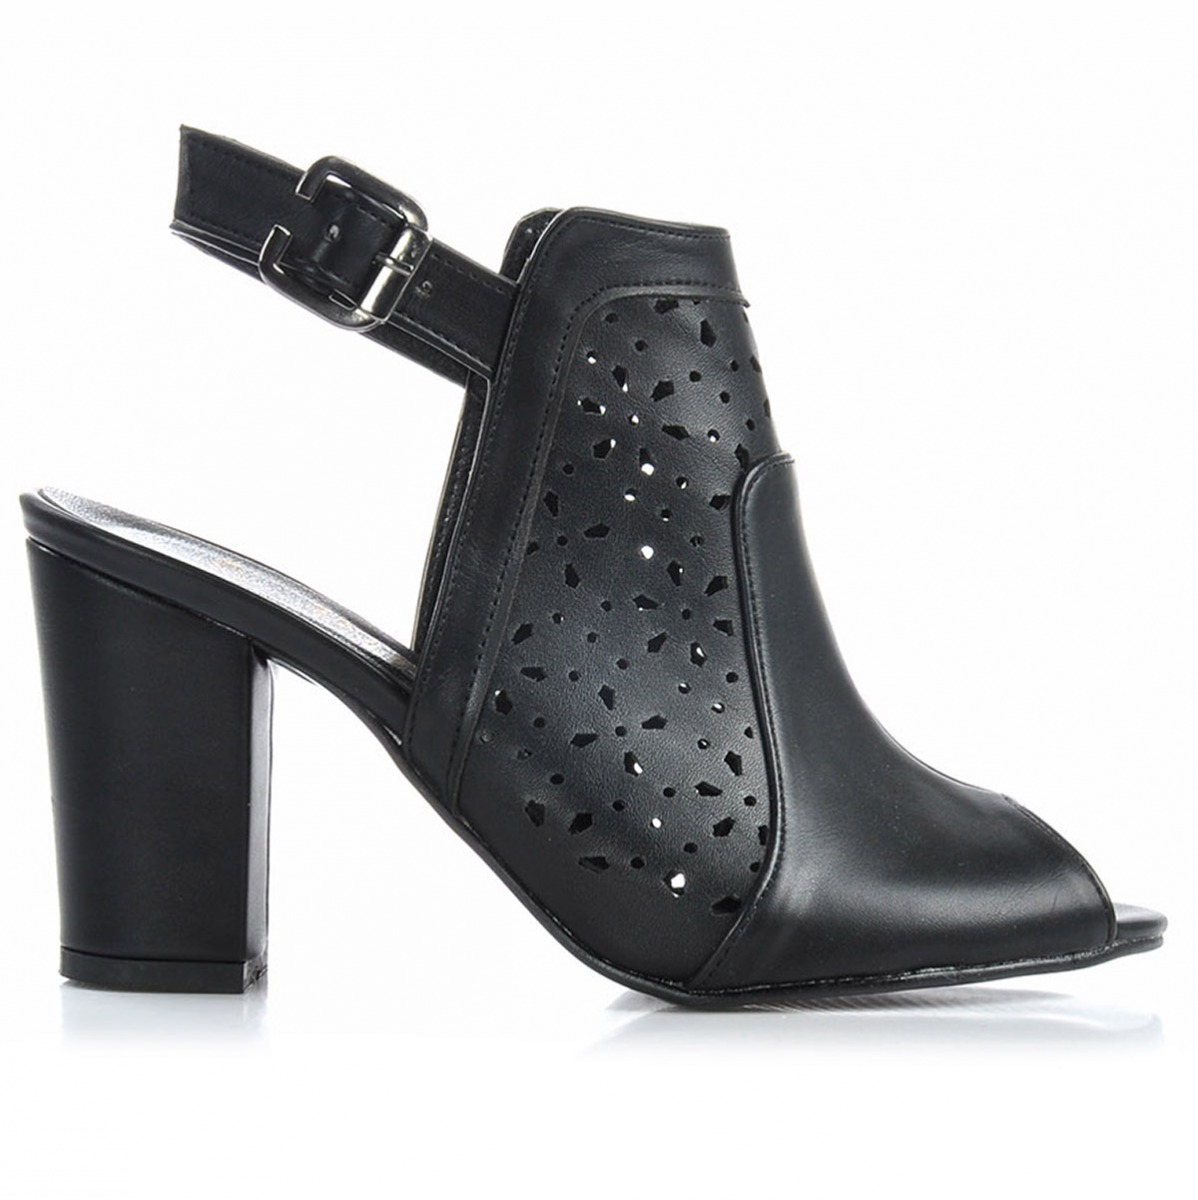 Flo Kadın  Siyah Klasik Topuklu Ayakkabı VZN-226Y. 1